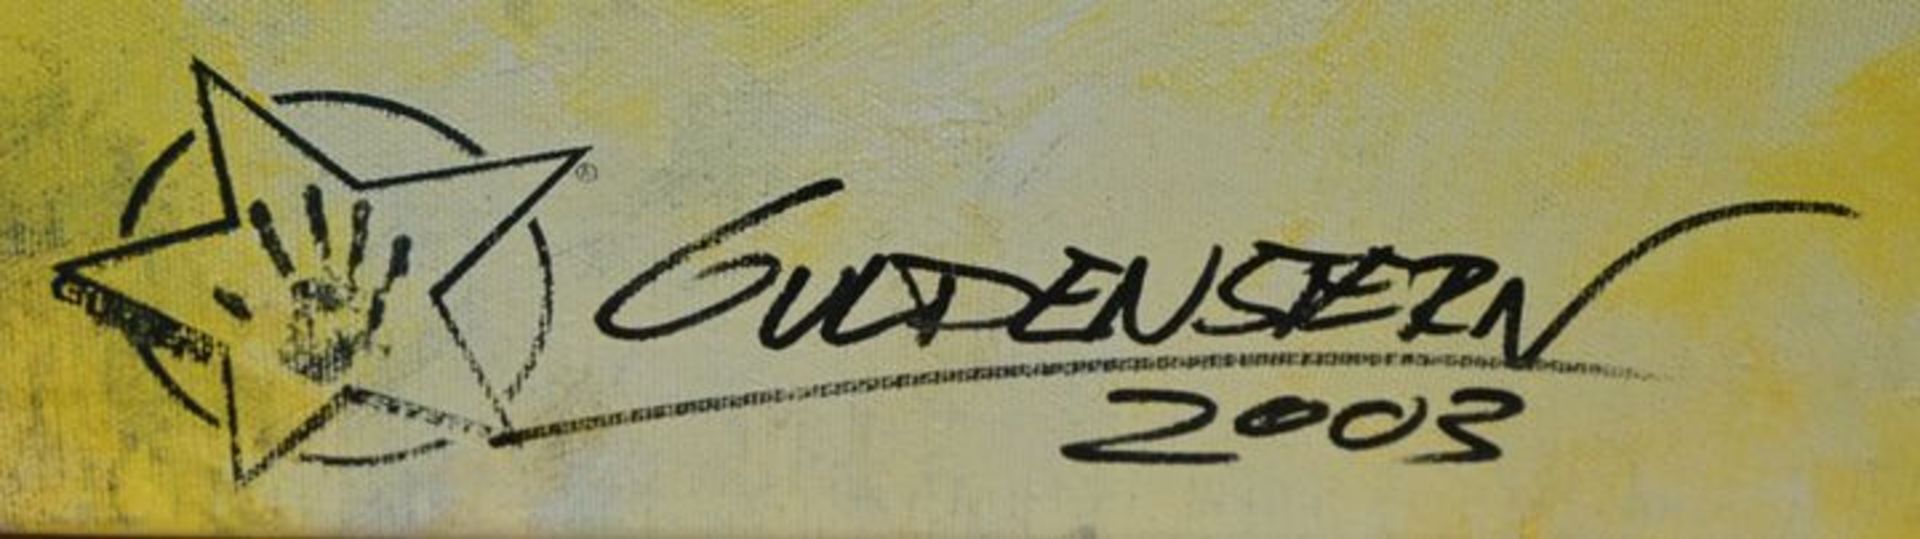 Guldenstern, Pop Art - Image 4 of 5